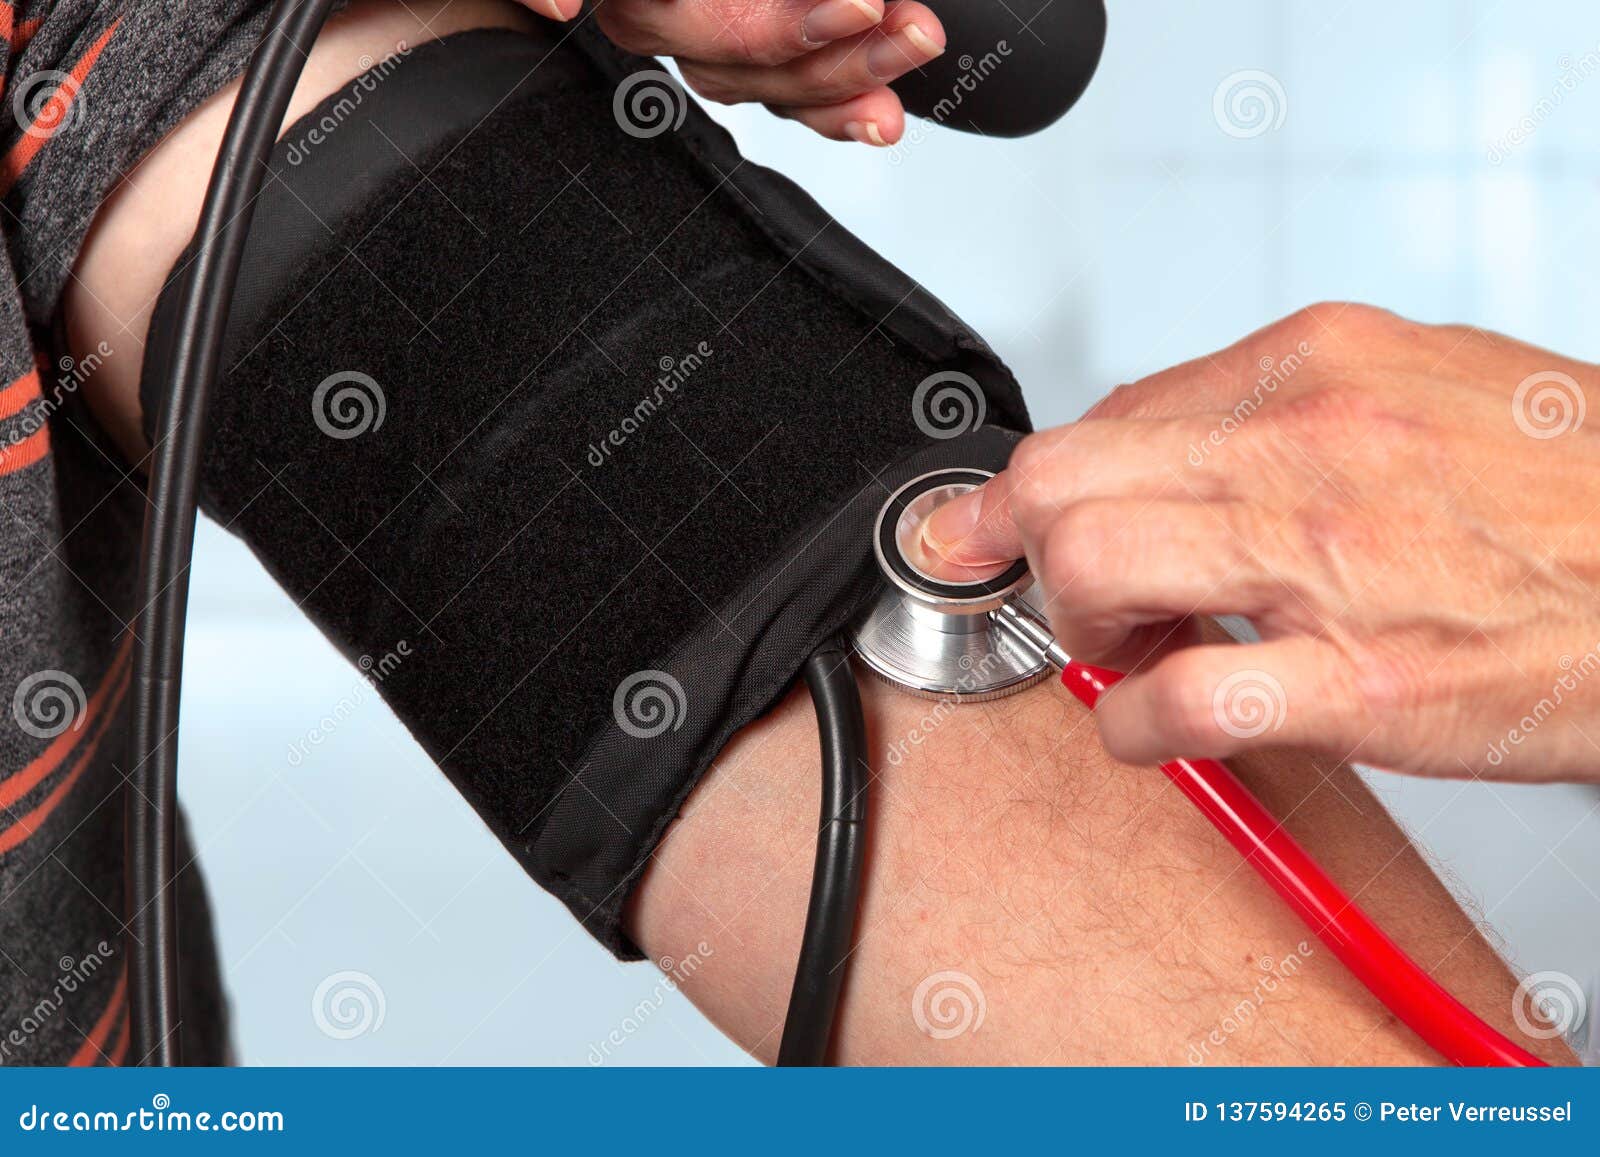 使用帮助-血压计使用说明